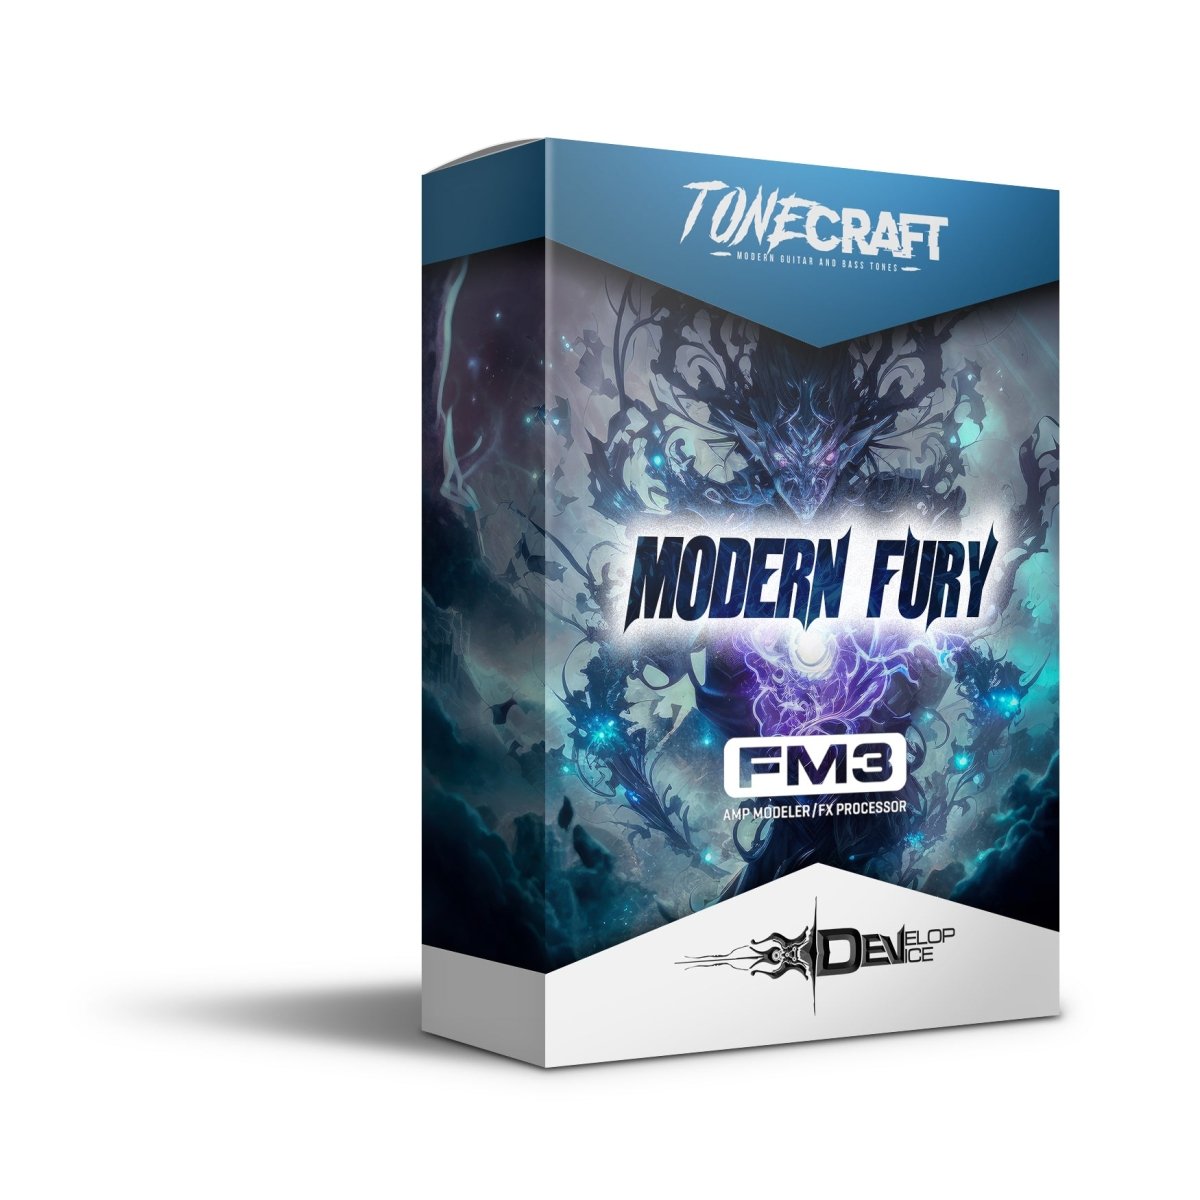 Modern Fury Pack for Fractal FM3 - Fractal FM3 / FM9 Presets by Develop Device